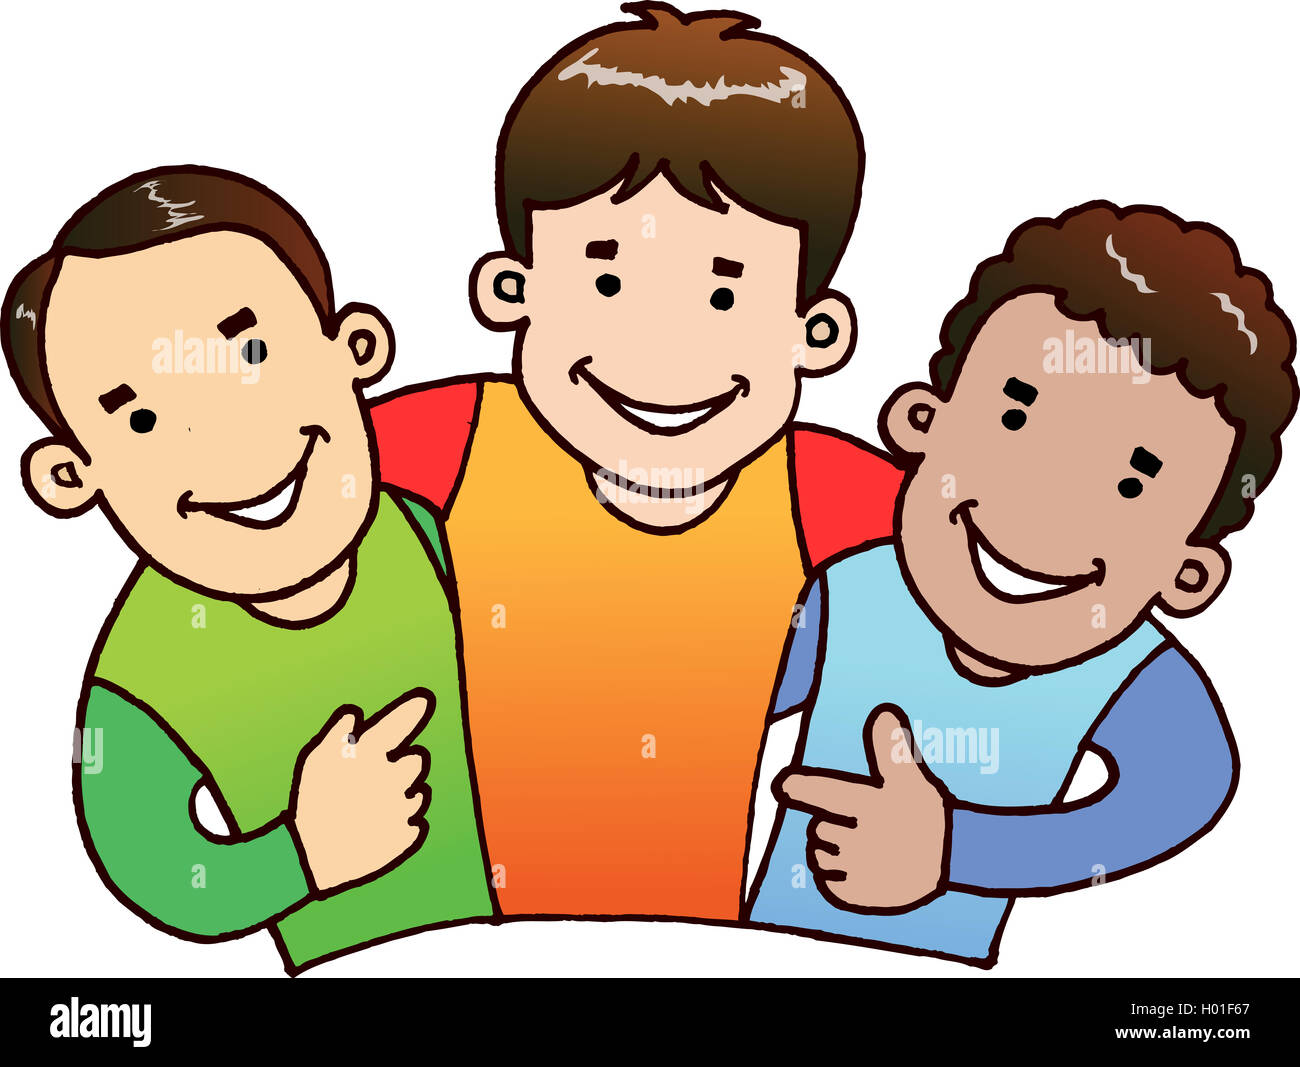 Ilustración de 3 muchachos con cara feliz conseguir juntos como buenos amigos. Foto de stock